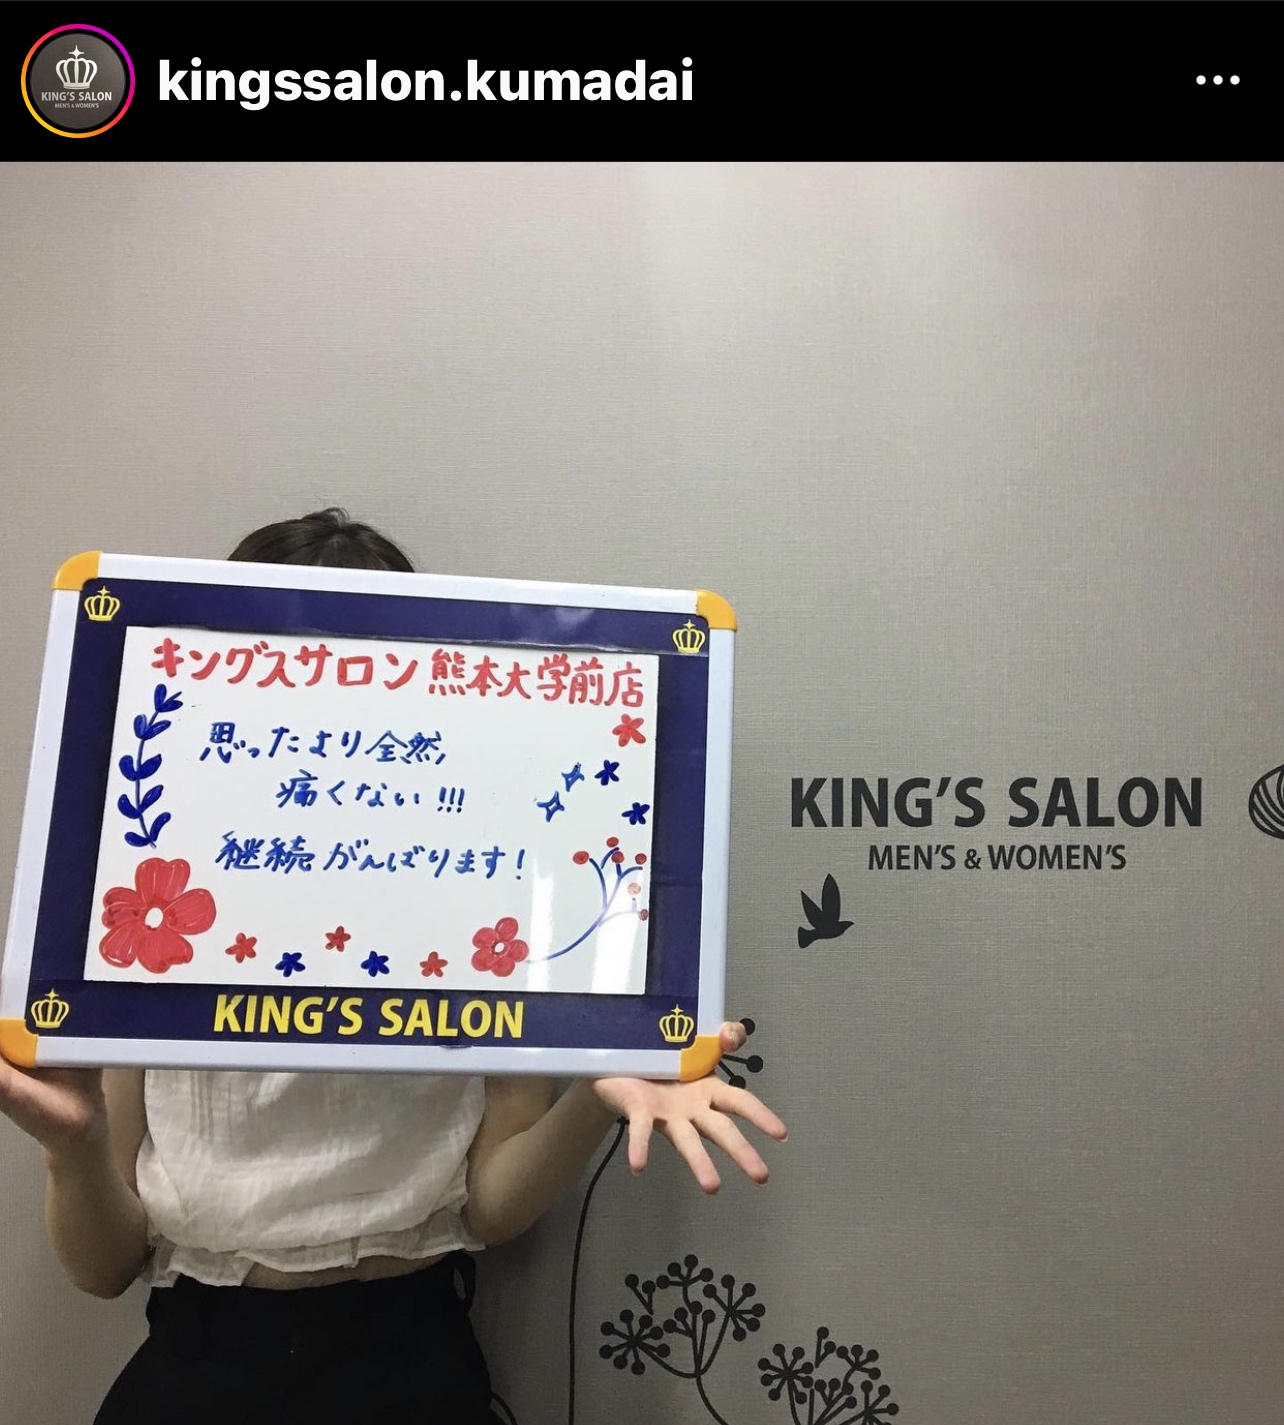 キングスサロン熊本大学前店 お客様の声 サムネイル画像